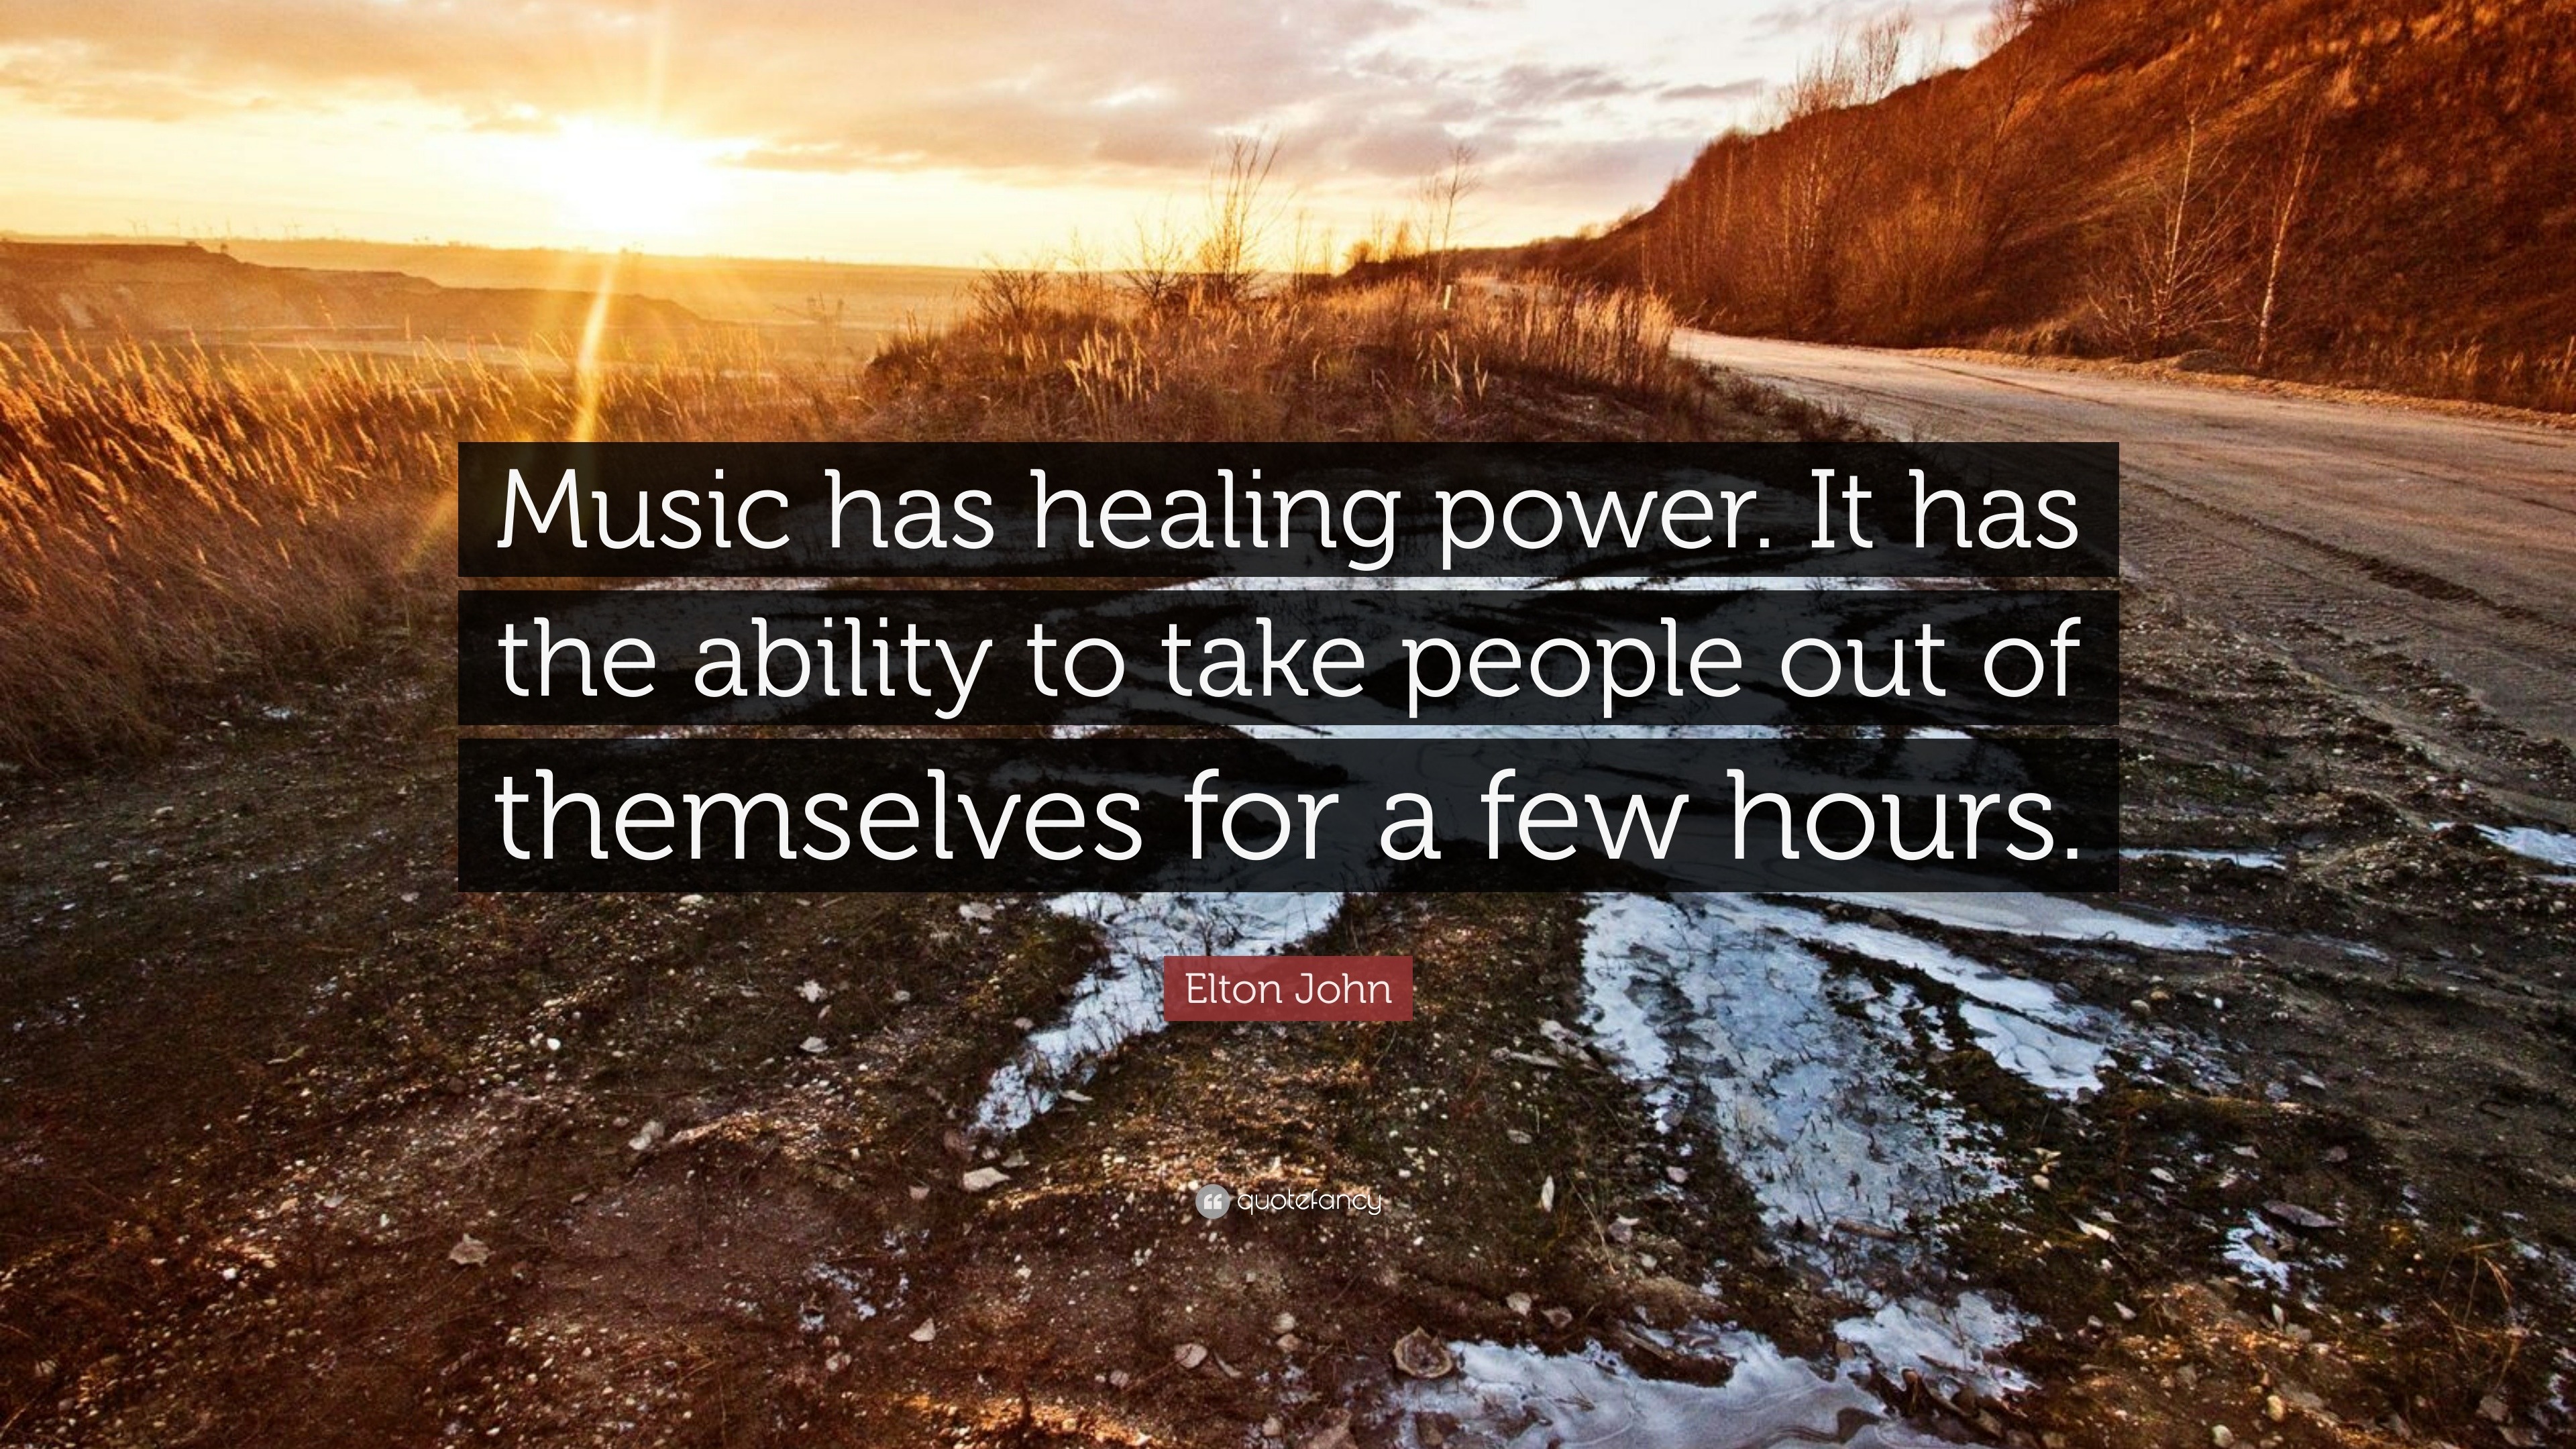 write a speech on music has healing power